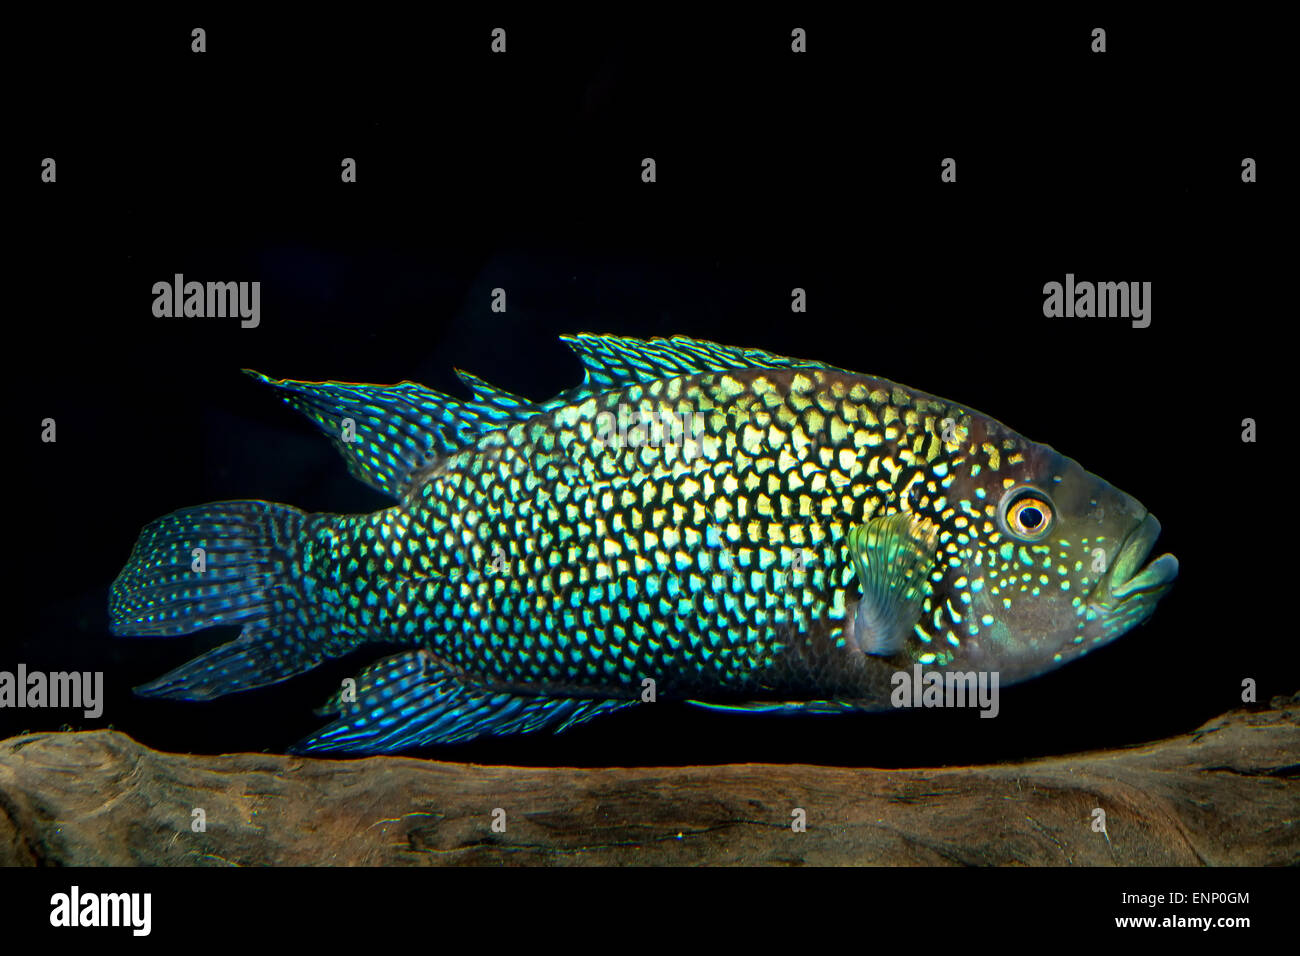 Aquarium cichlid fish from the genus Rocio. Stock Photo